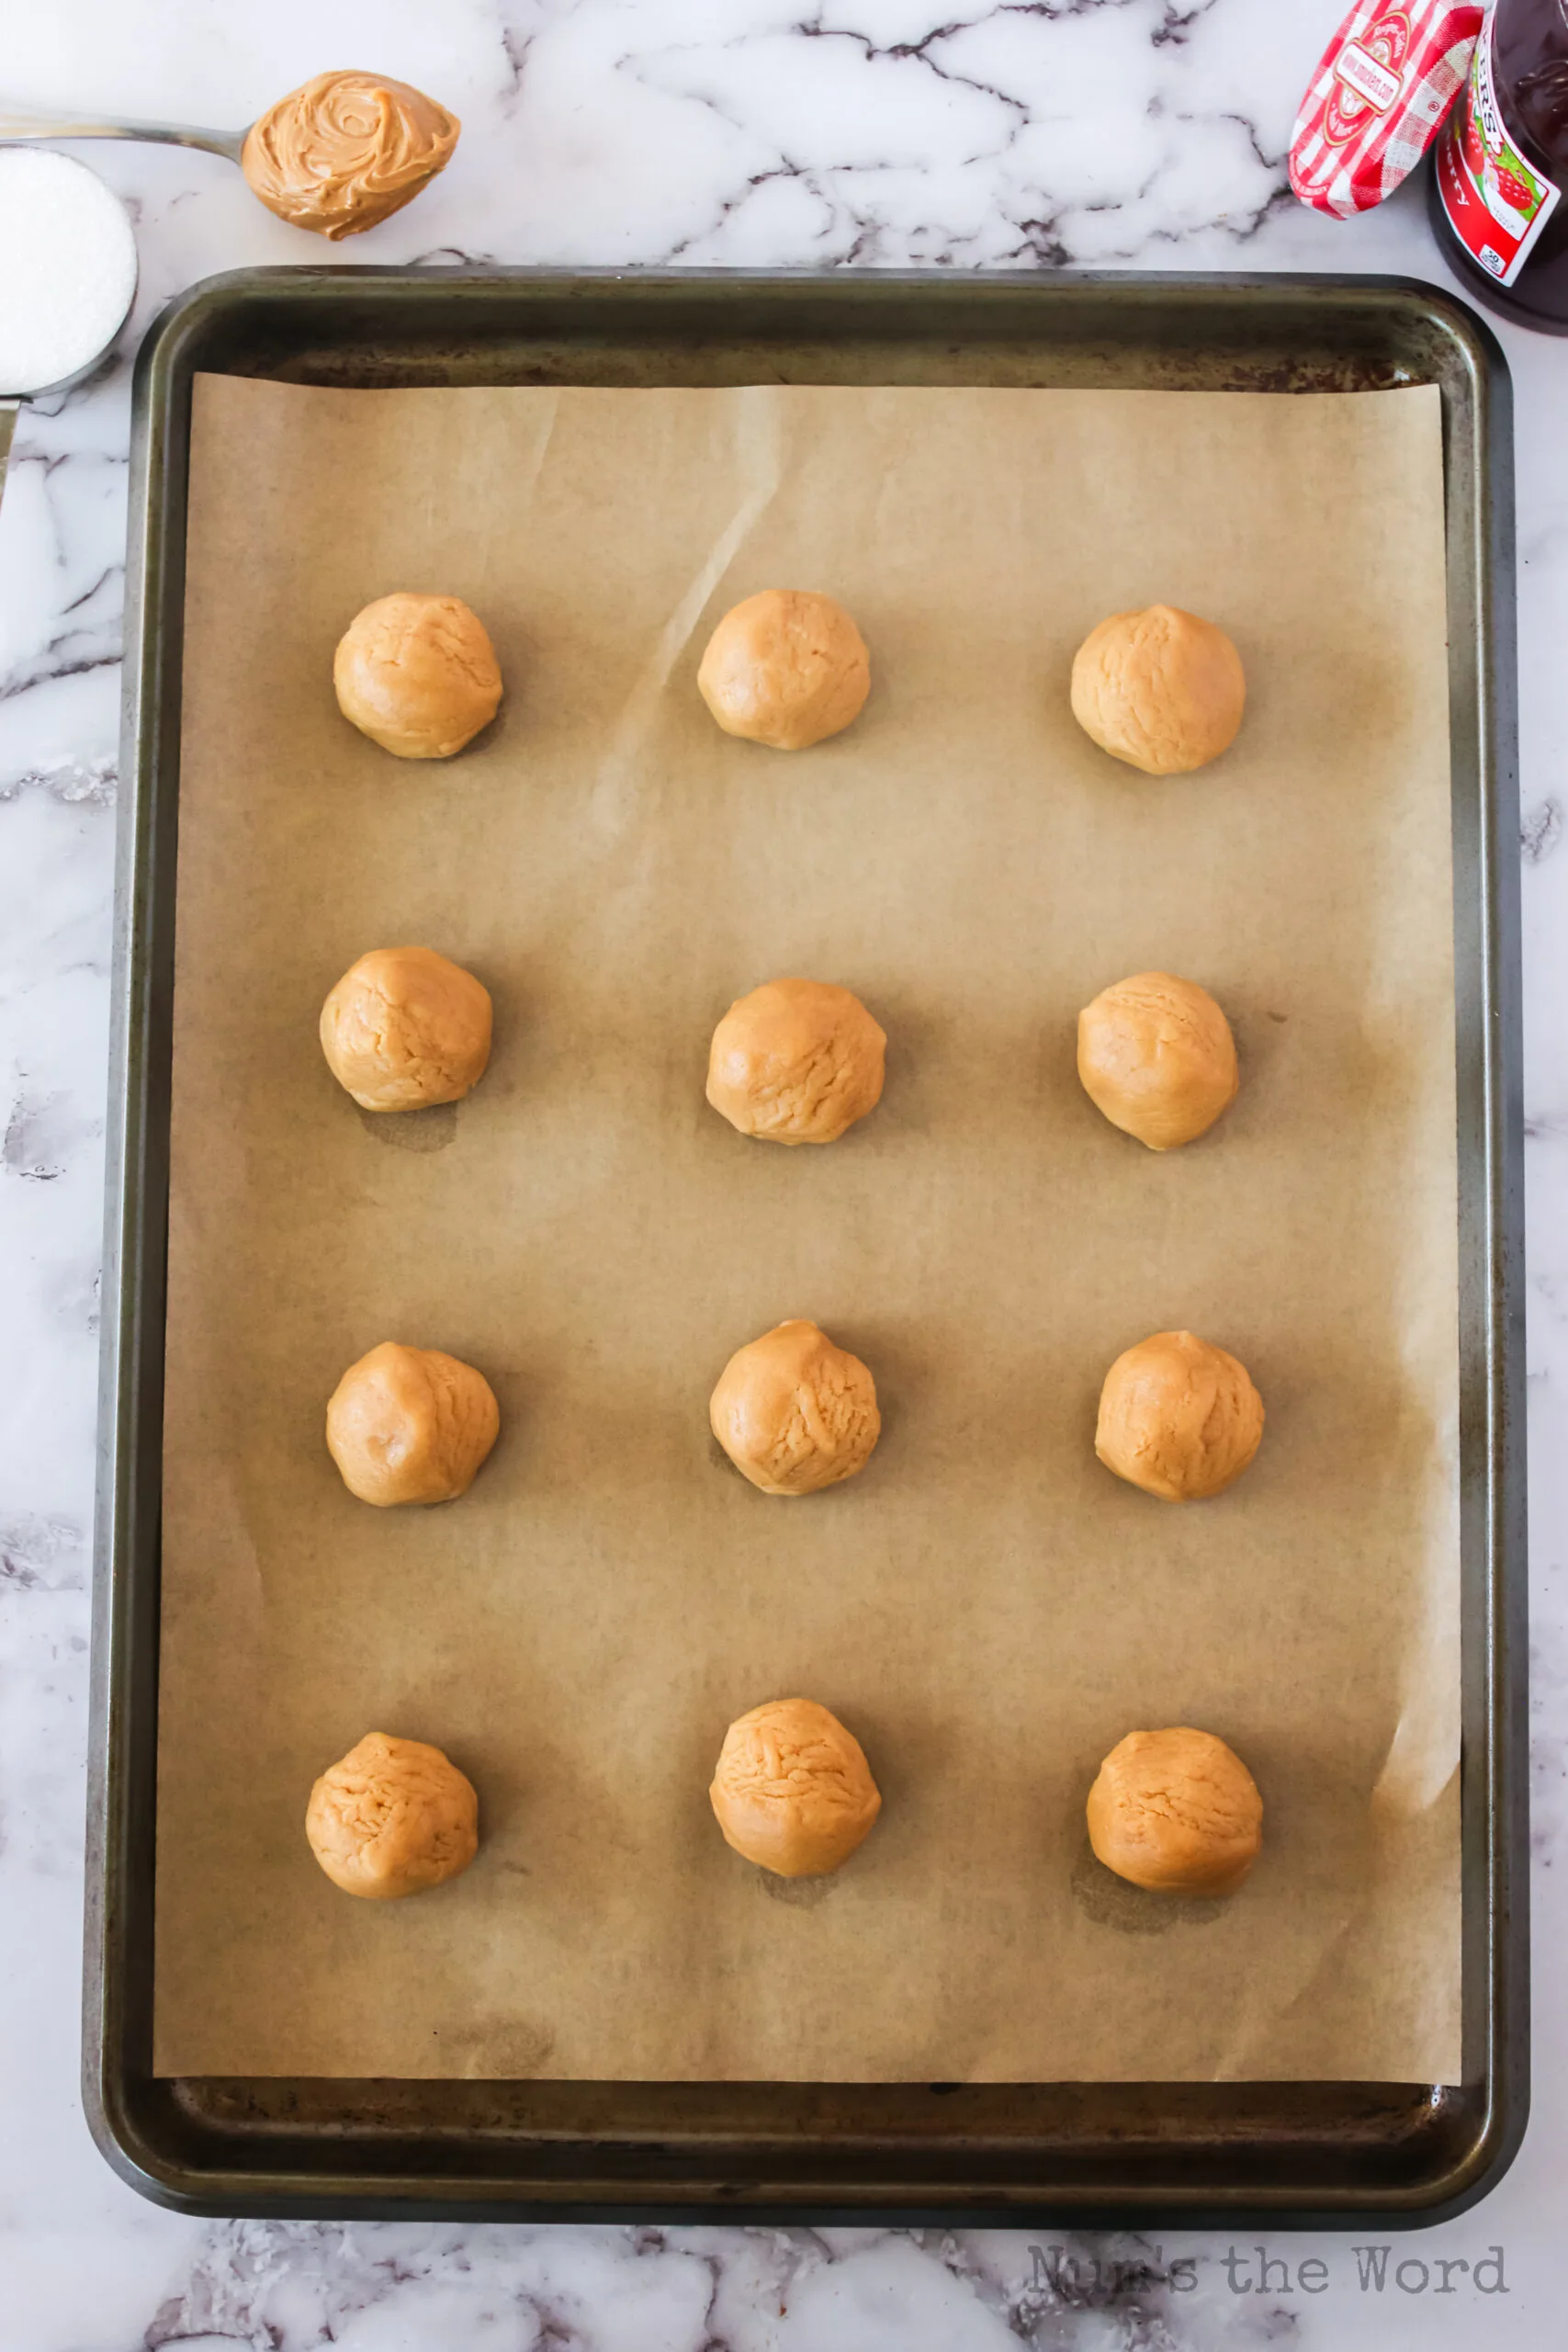 12 dough balls on a baking sheet